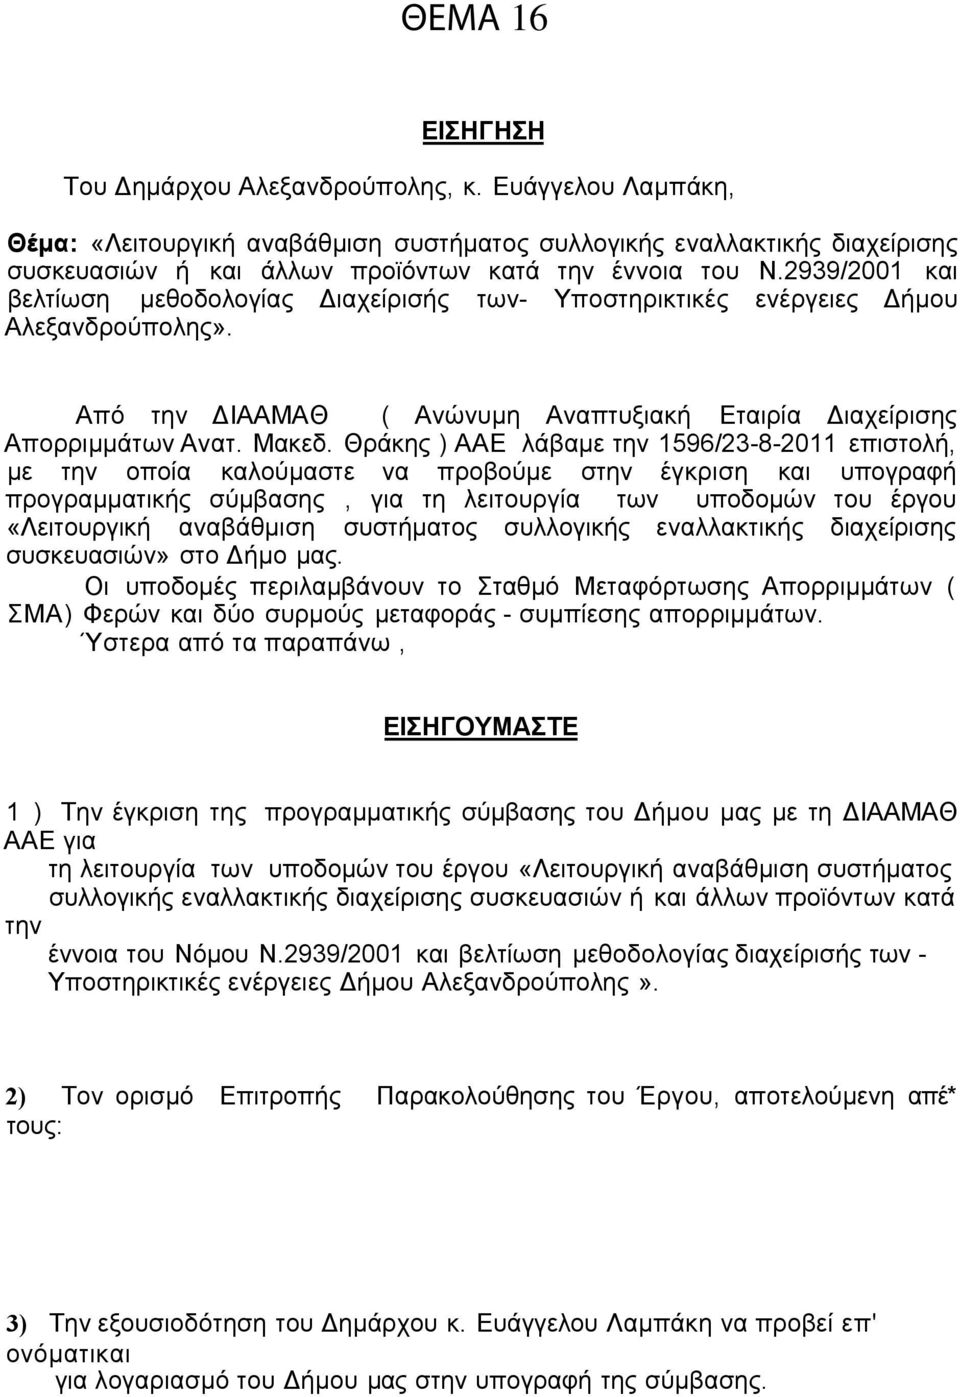 Θράκης ) ΑΑΕ λάβαμε την 1596/23-8-2011 επιστολή, με την οποία καλούμαστε να προβούμε στην έγκριση και υπογραφή προγραμματικής σύμβασης, για τη λειτουργία των υποδομών του έργου «Λειτουργική